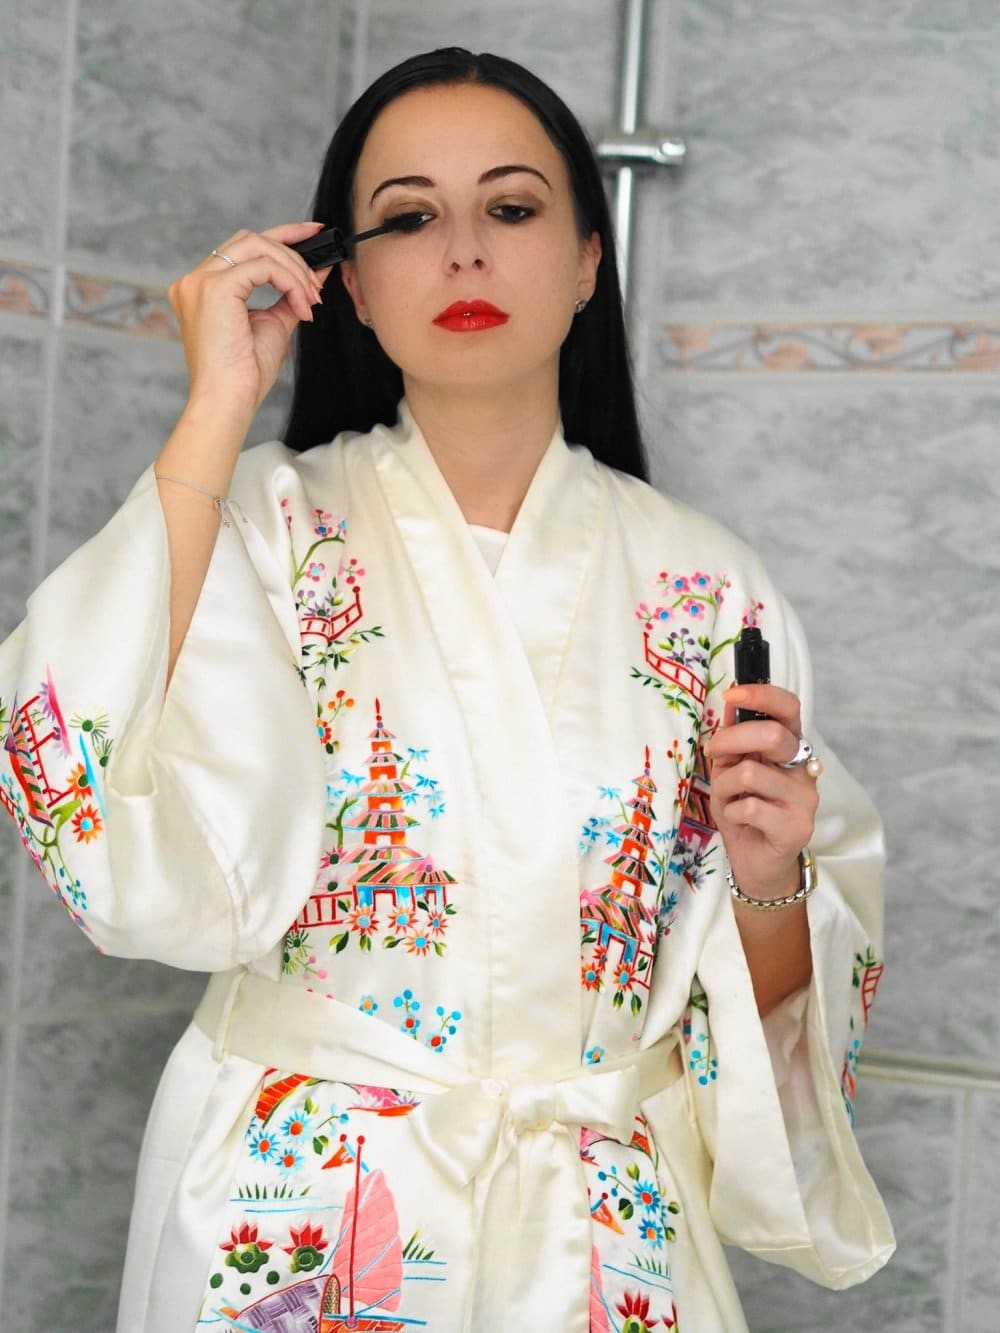 Heute zeige ich euch auf meinem Blog ein Geisha inspiriertes Make Up gemeinsam mit den tollen Produkten von Isabelle Lancray